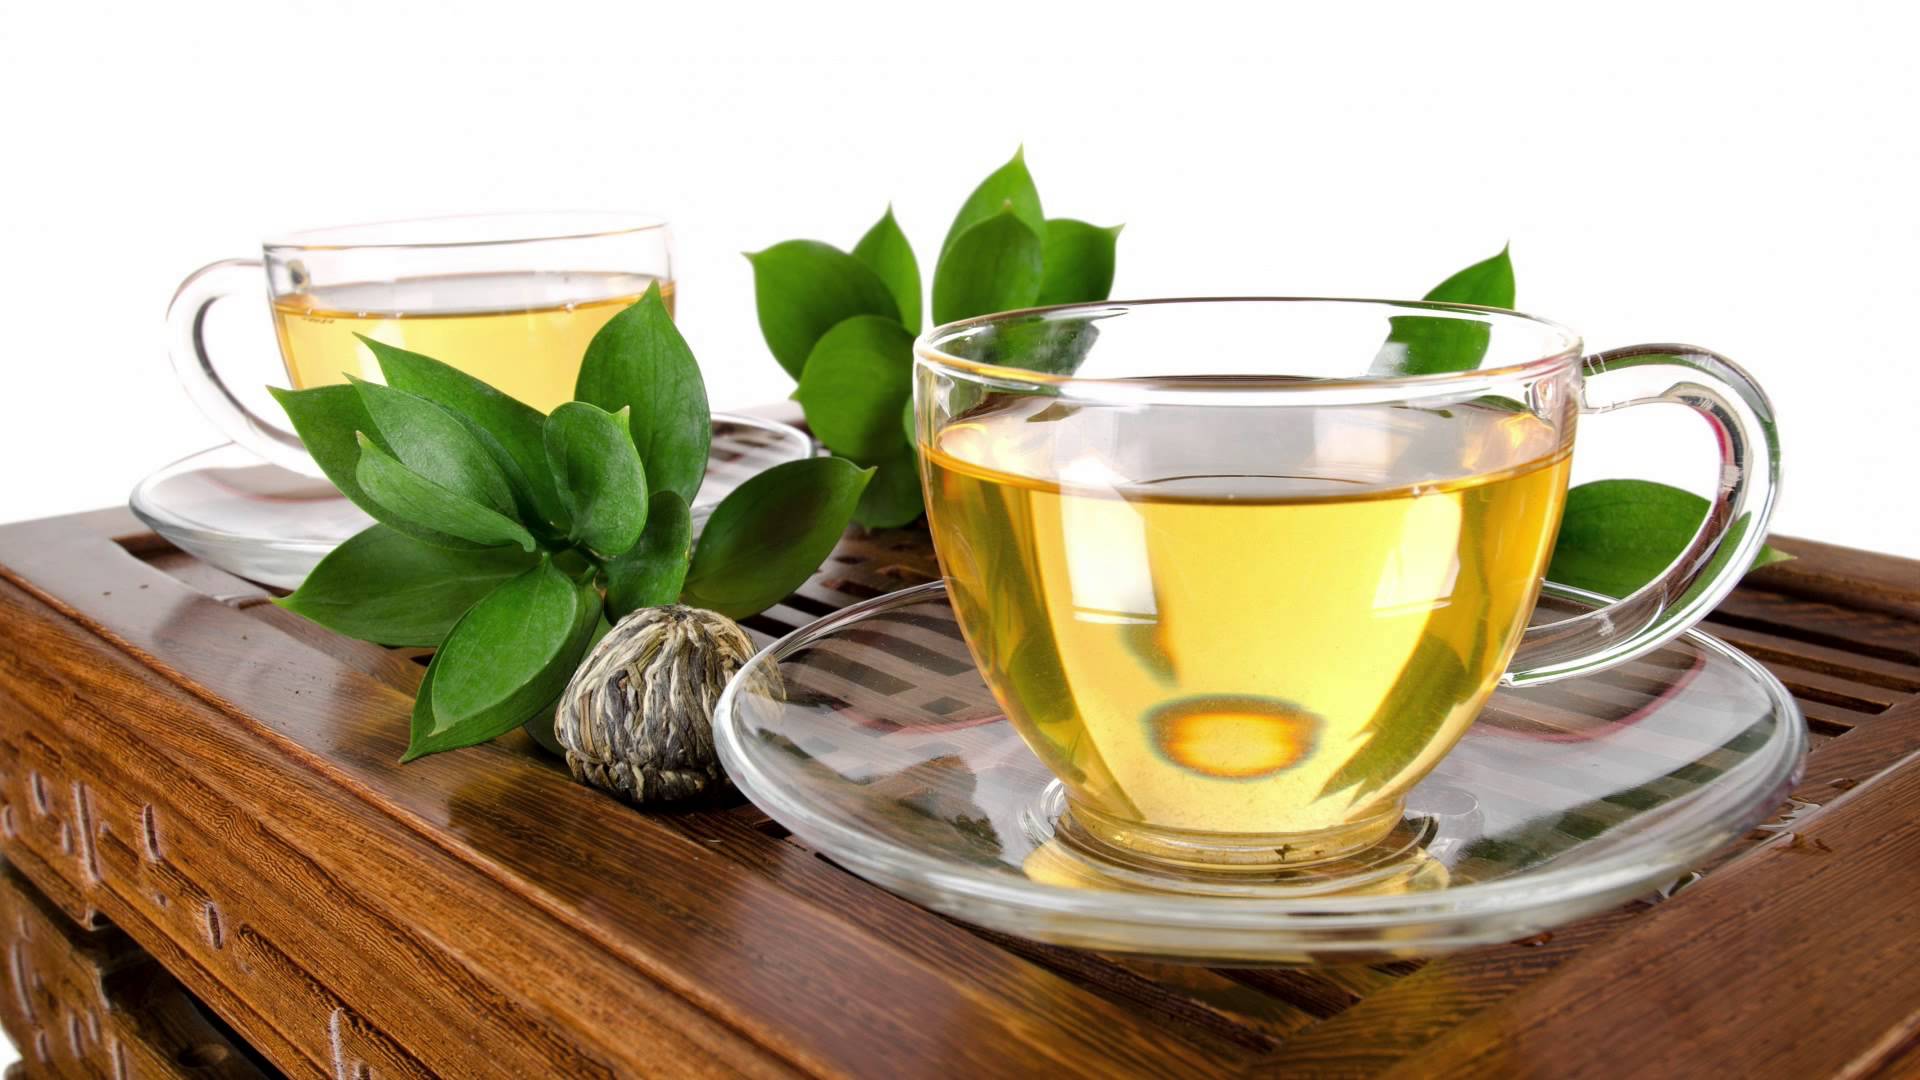 Segíti a fogyást, kiűzi a méreganyagokat: zsírégető tea házilag